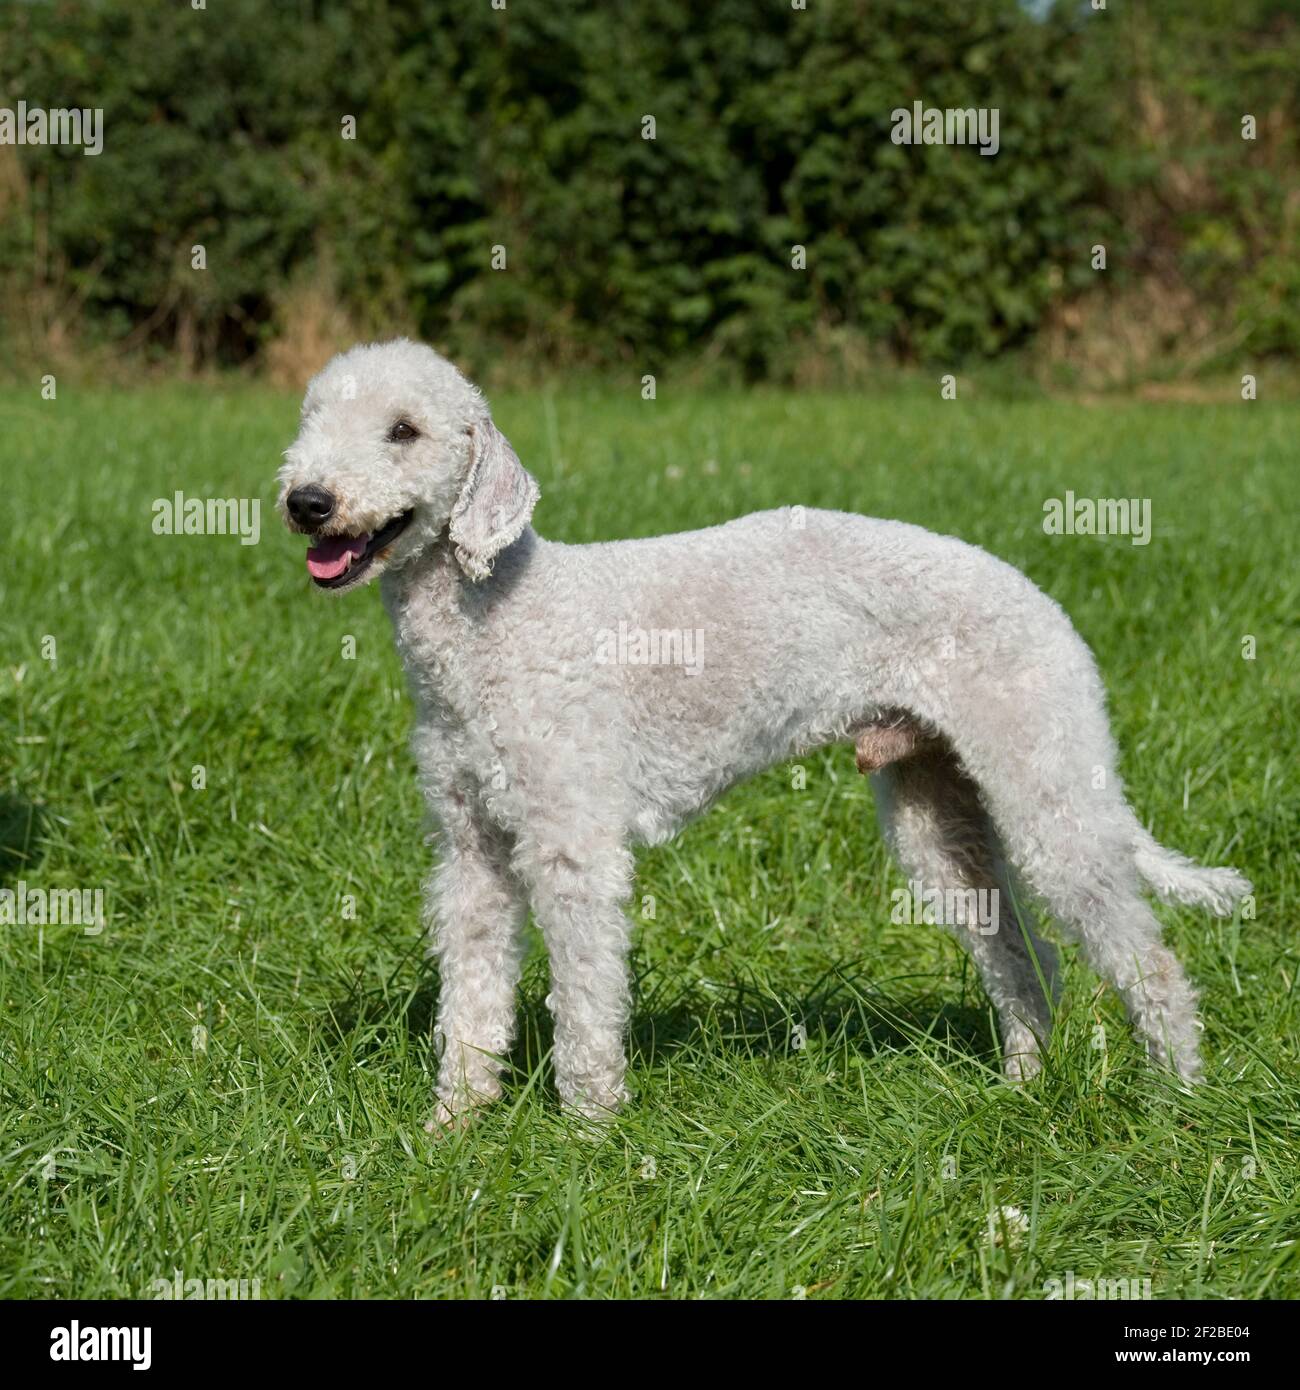 Bedlington terrier Dog Stock Photo